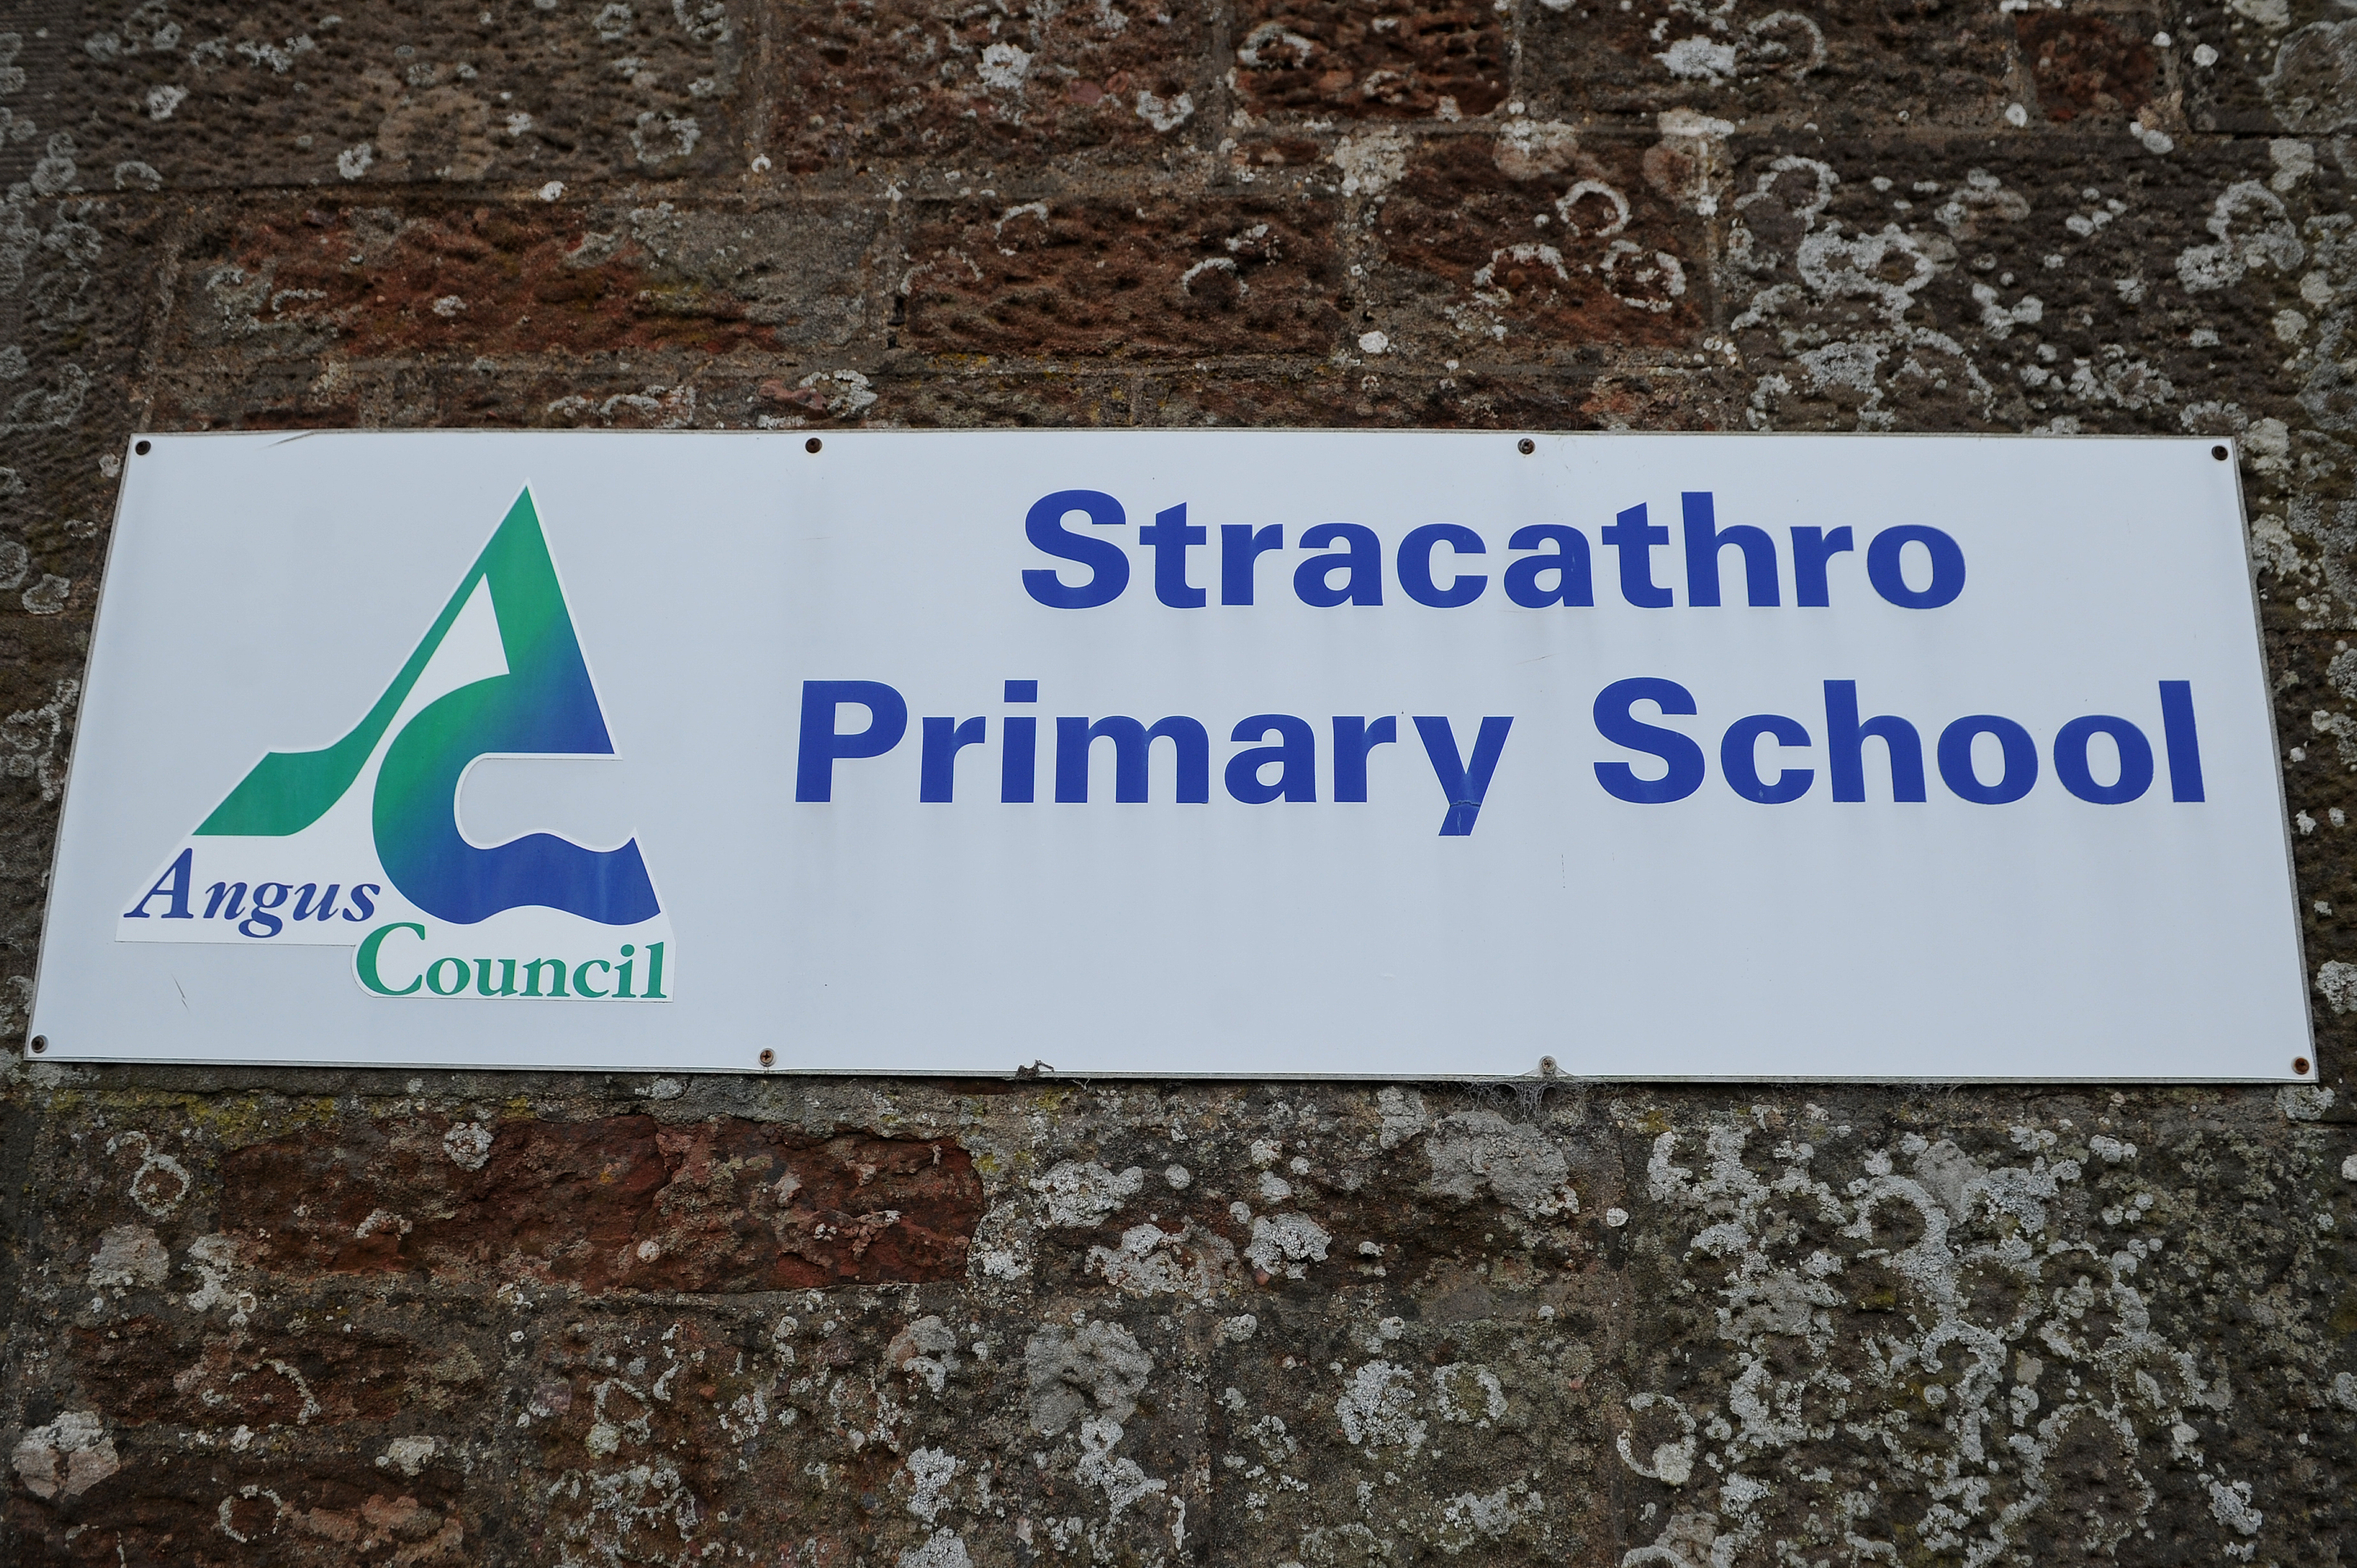 Stracathro Primary School.